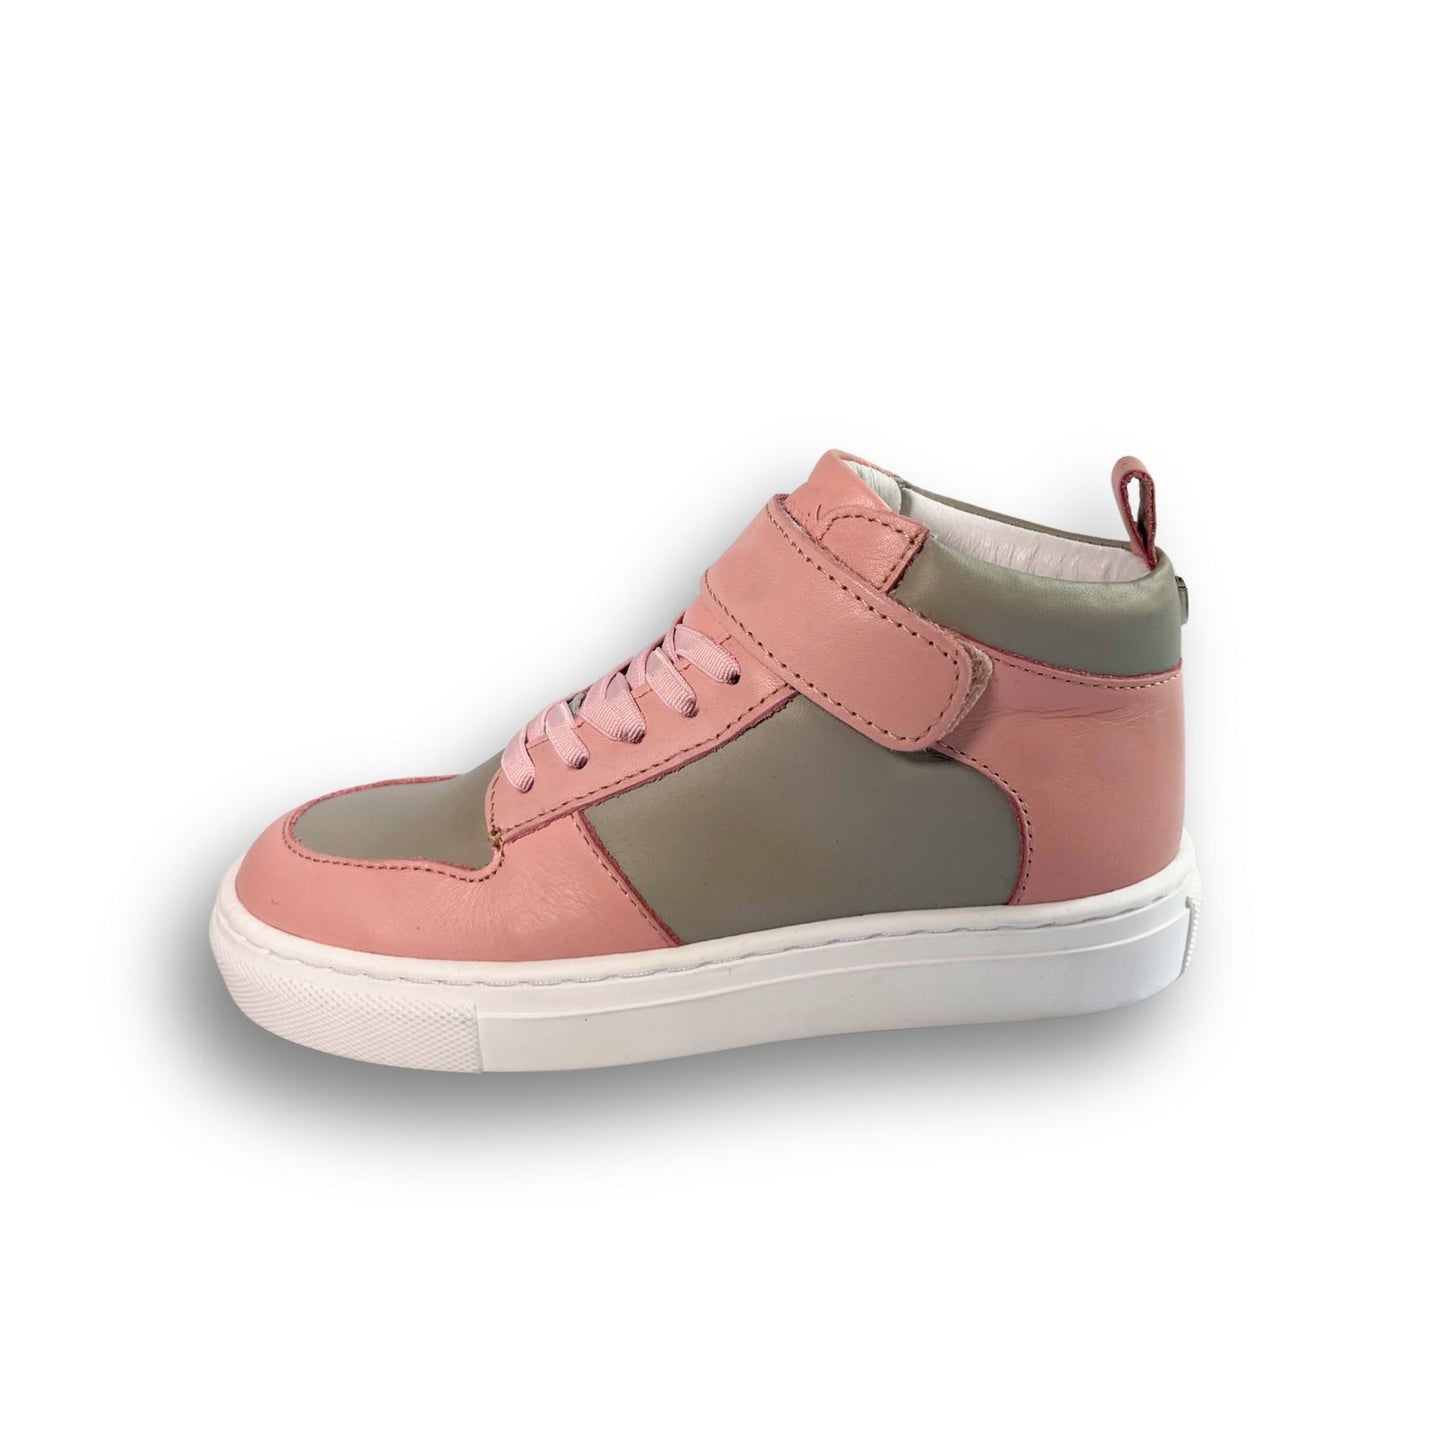 Kids Sneakers - Pink